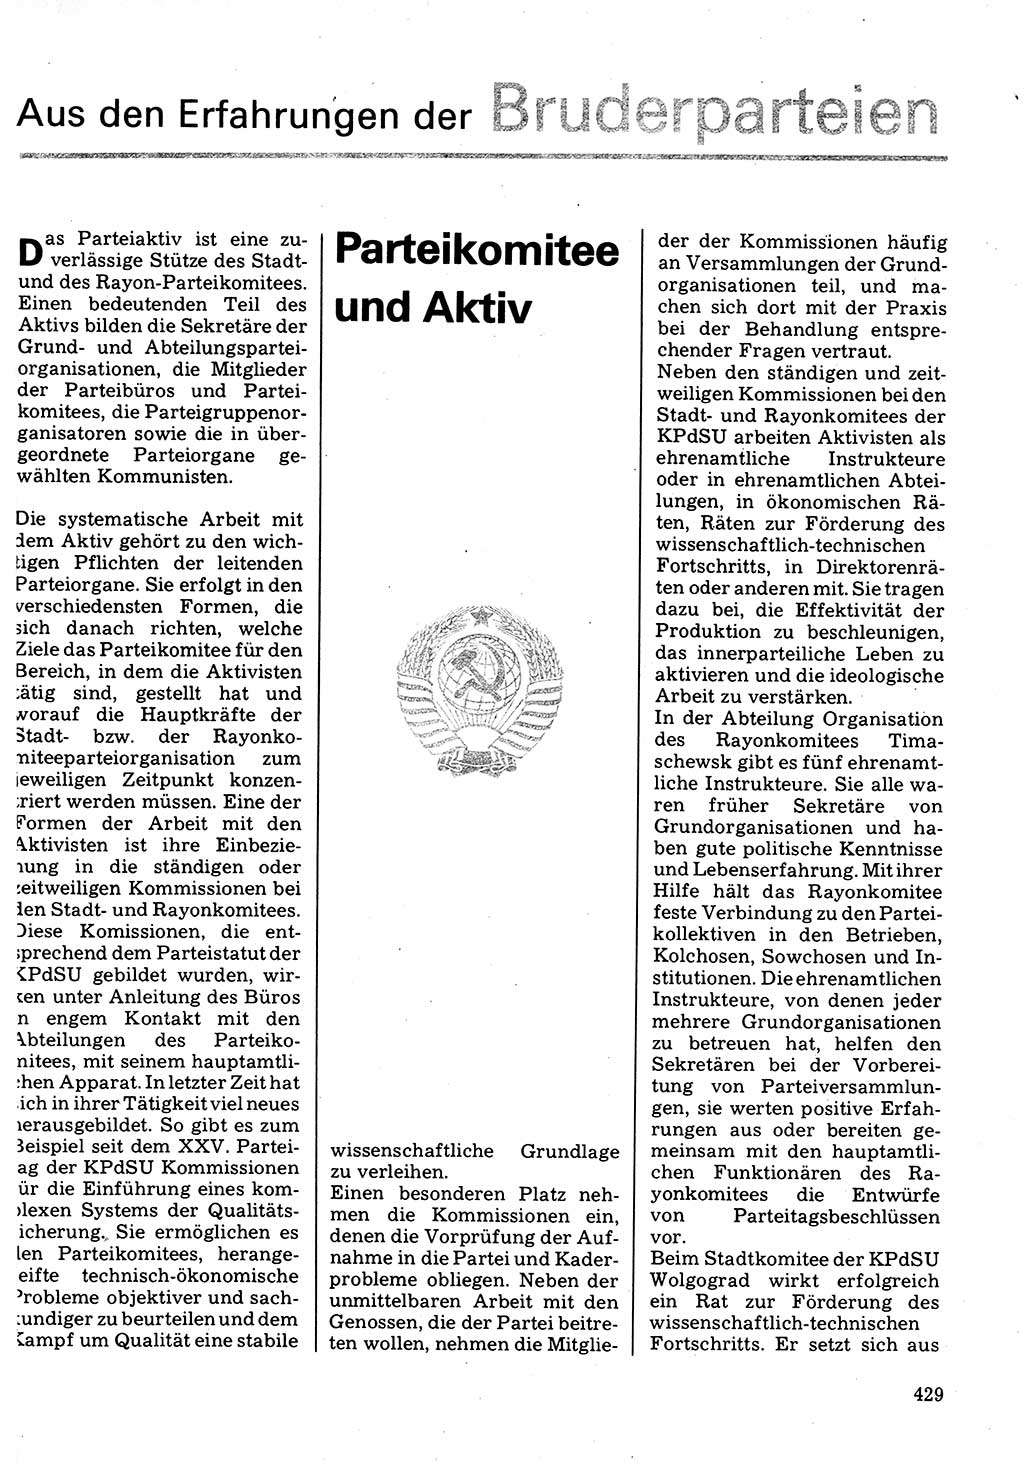 Neuer Weg (NW), Organ des Zentralkomitees (ZK) der SED (Sozialistische Einheitspartei Deutschlands) für Fragen des Parteilebens, 32. Jahrgang [Deutsche Demokratische Republik (DDR)] 1977, Seite 429 (NW ZK SED DDR 1977, S. 429)